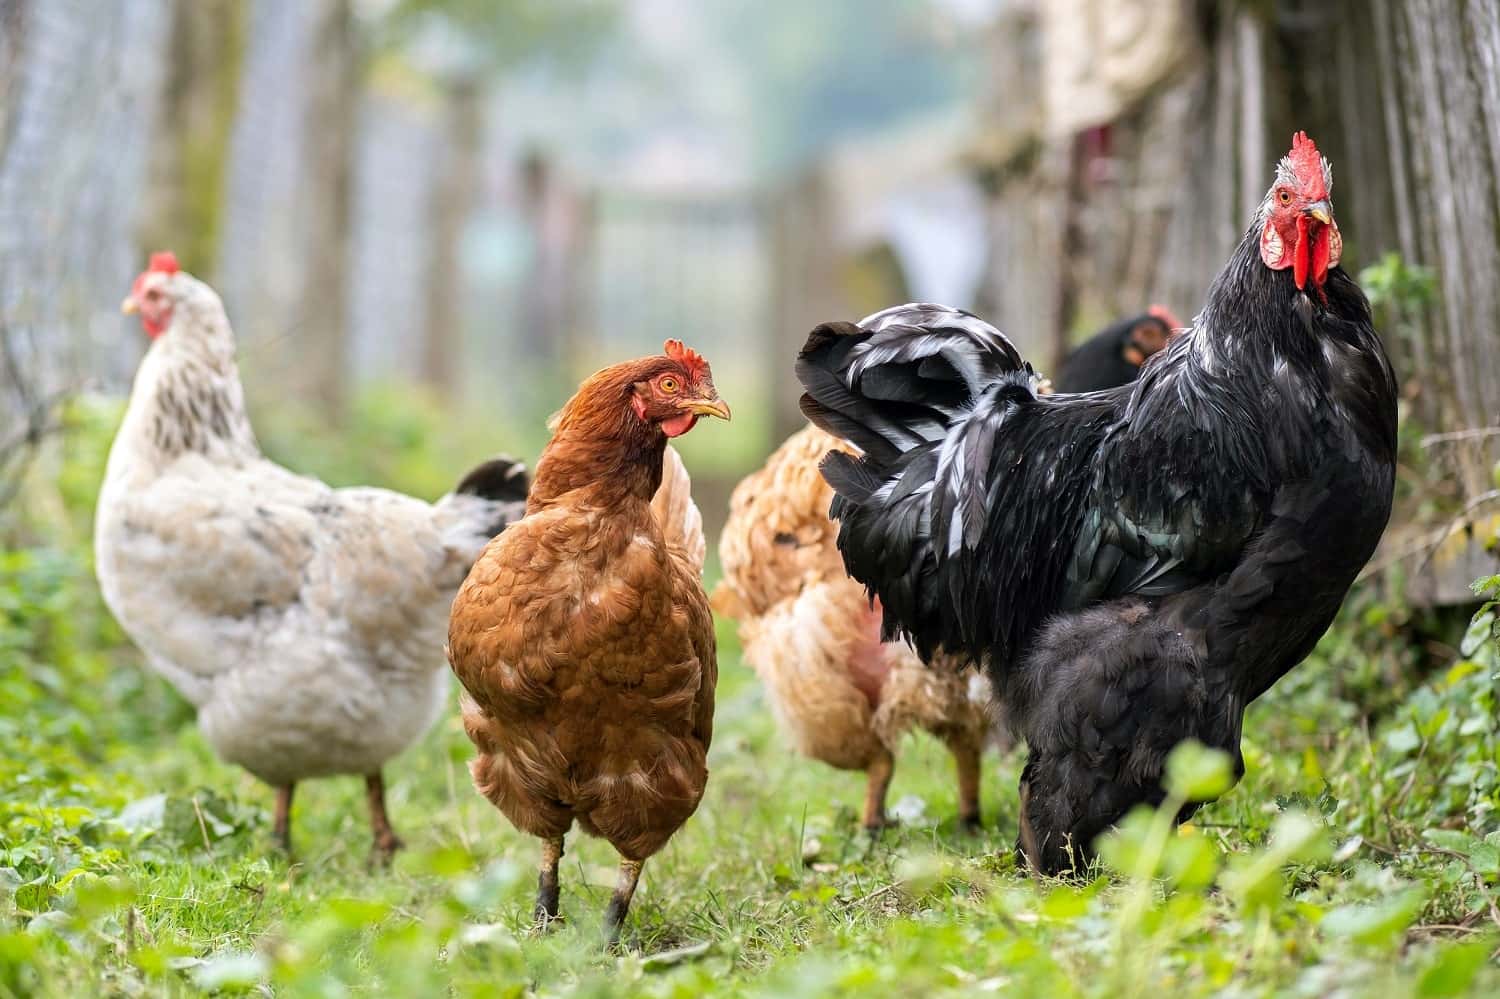 chicken-feeding-on-traditional-rural-barnyard-hen-2022-08-02-14-42-07-utc-min-v2.jpg